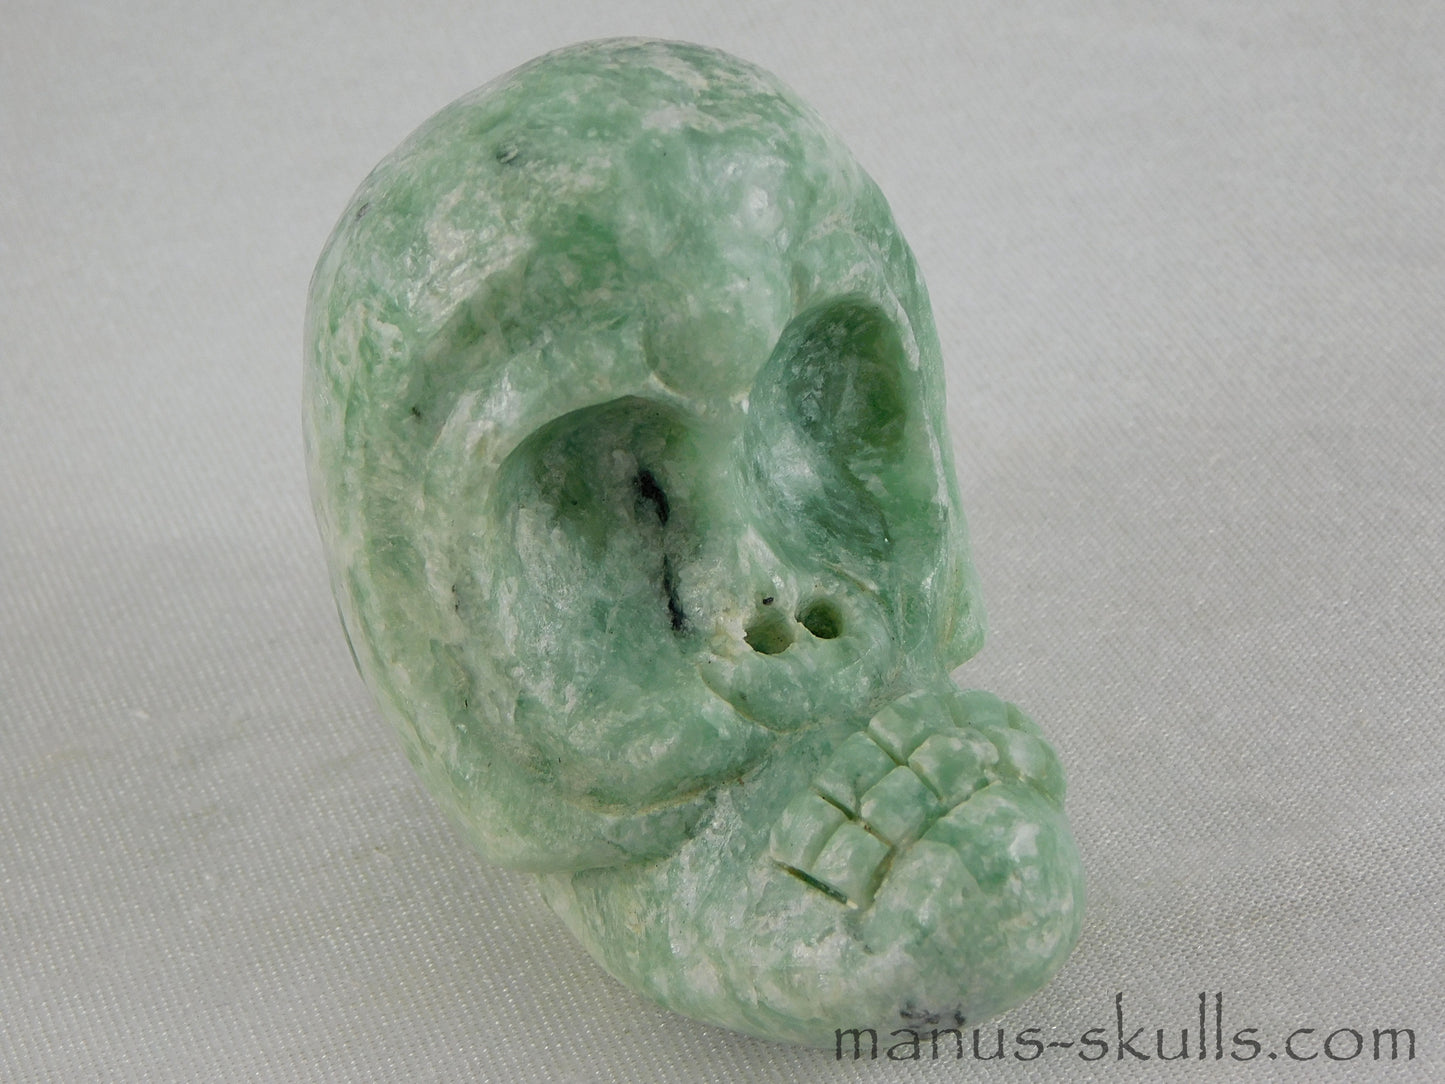 Green Steatite Evolian Skull #17